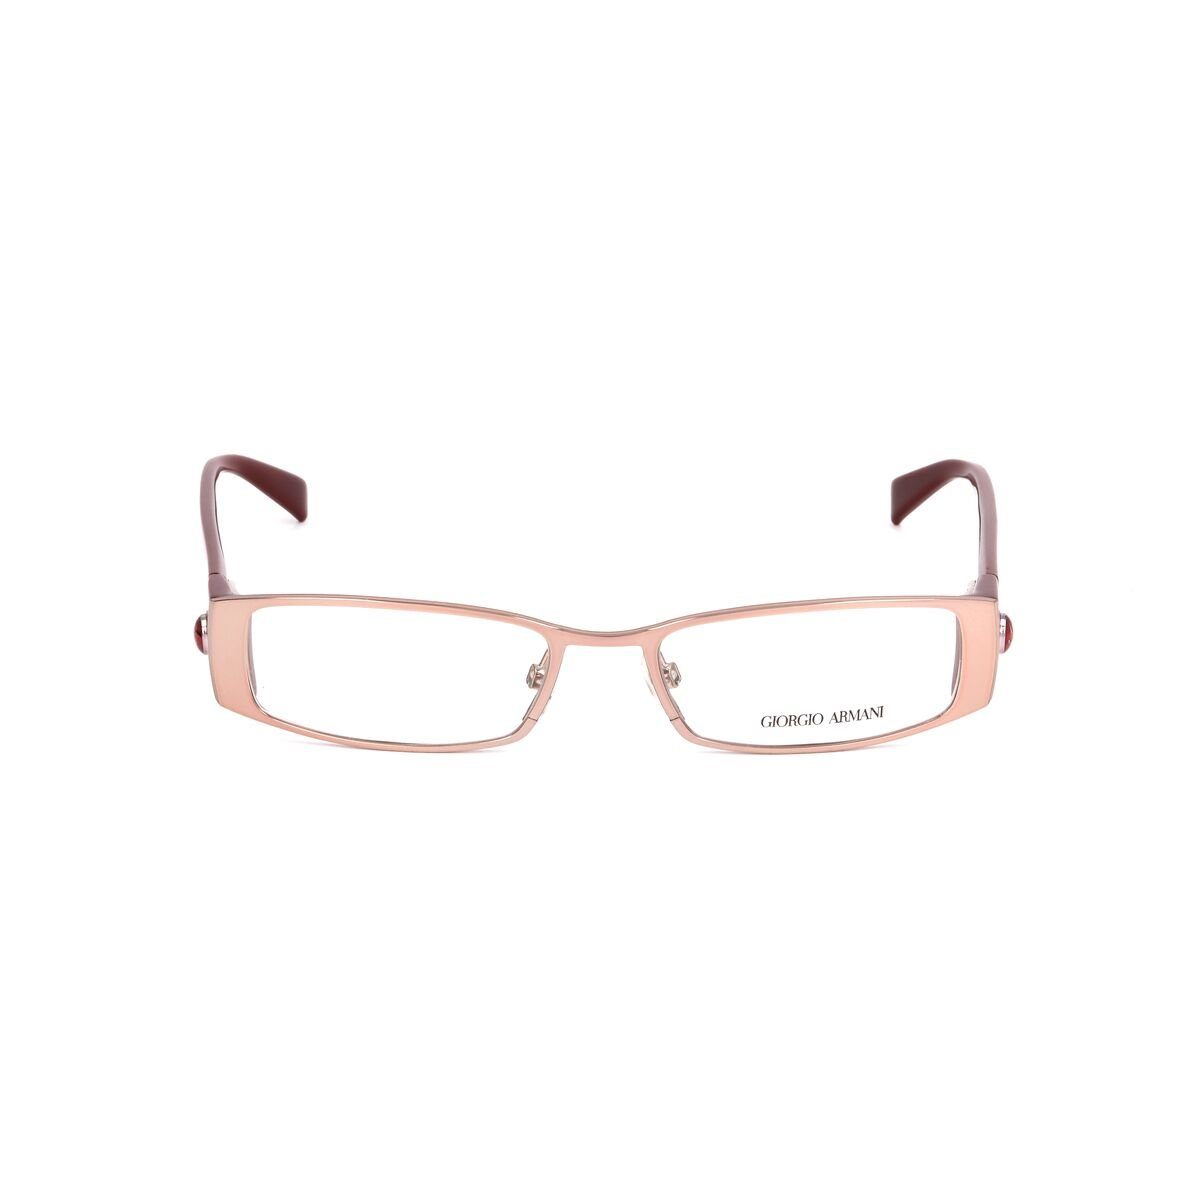 GA-641-NVS Giorgio ohne Sehstärke Brillengestell Armani Gold Brille Brillenfassung Brillenges Armani